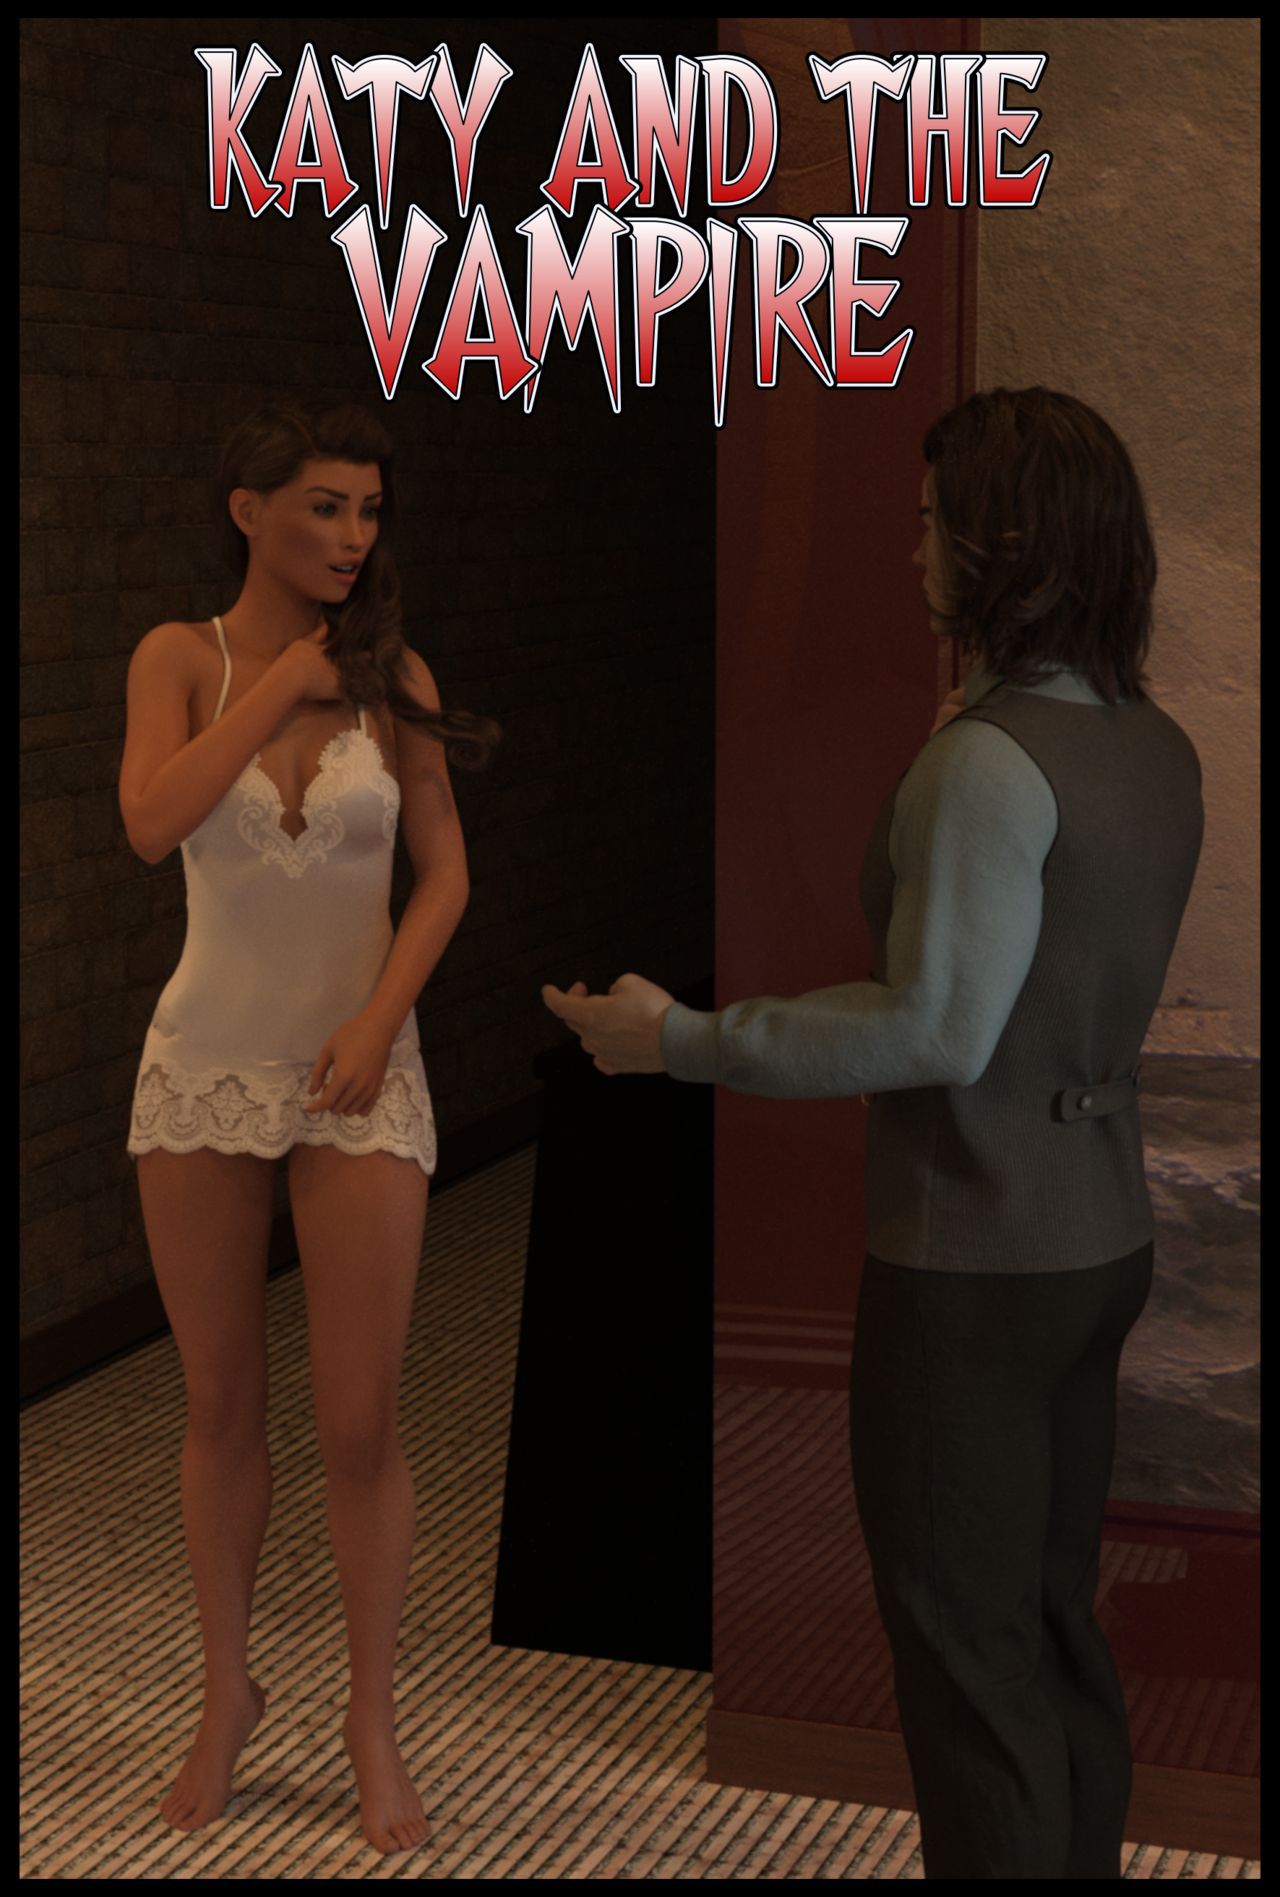 Katy and the vampire 1